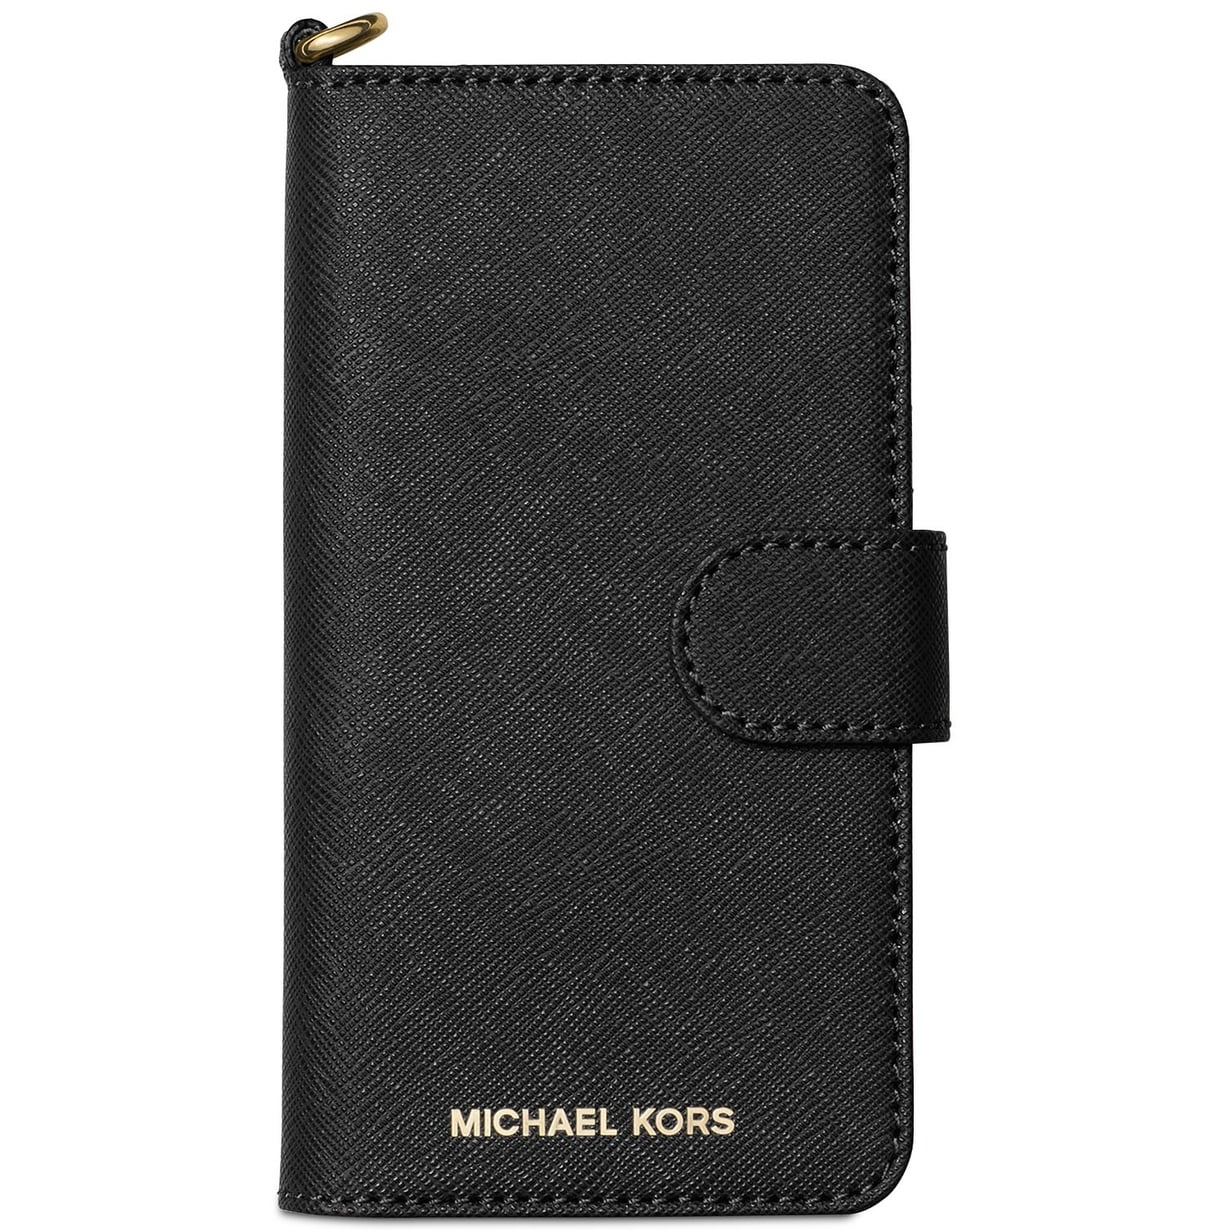 michael kors iphone 8 case wallet